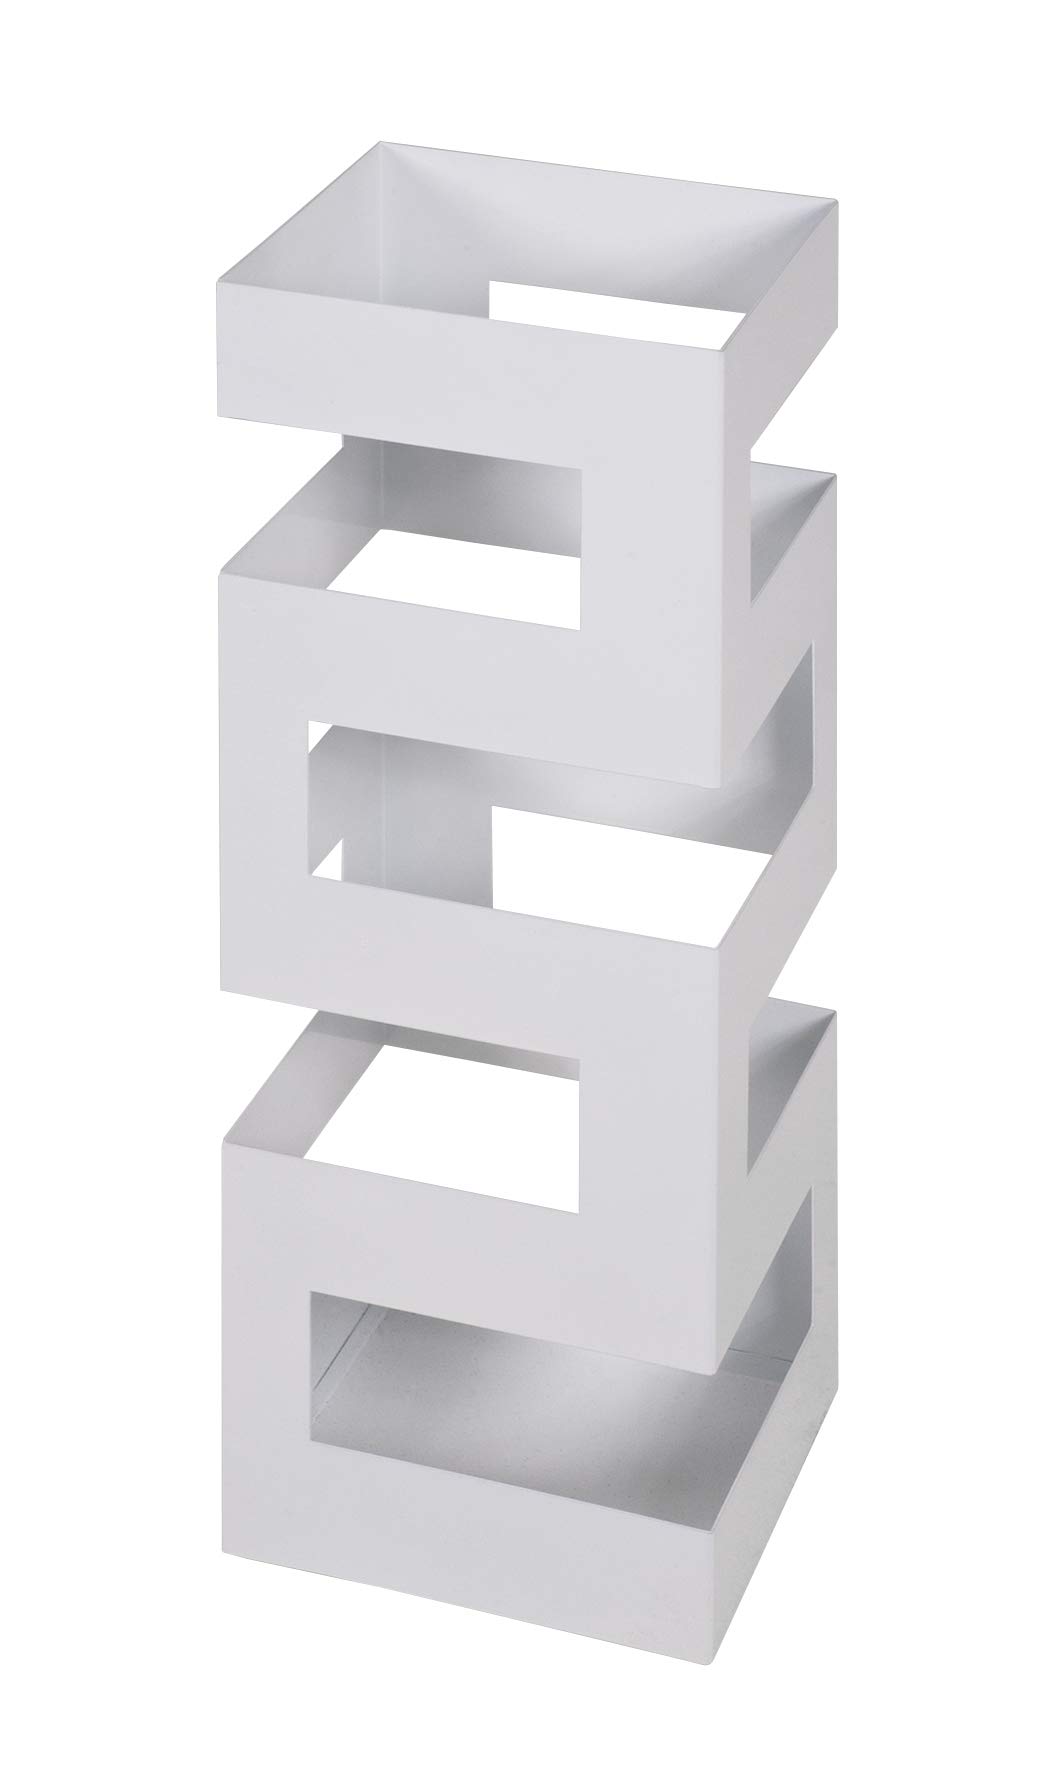 HAKU Möbel Schirmständer, Metall, weiß, B 16 x T 16 x H 48 cm